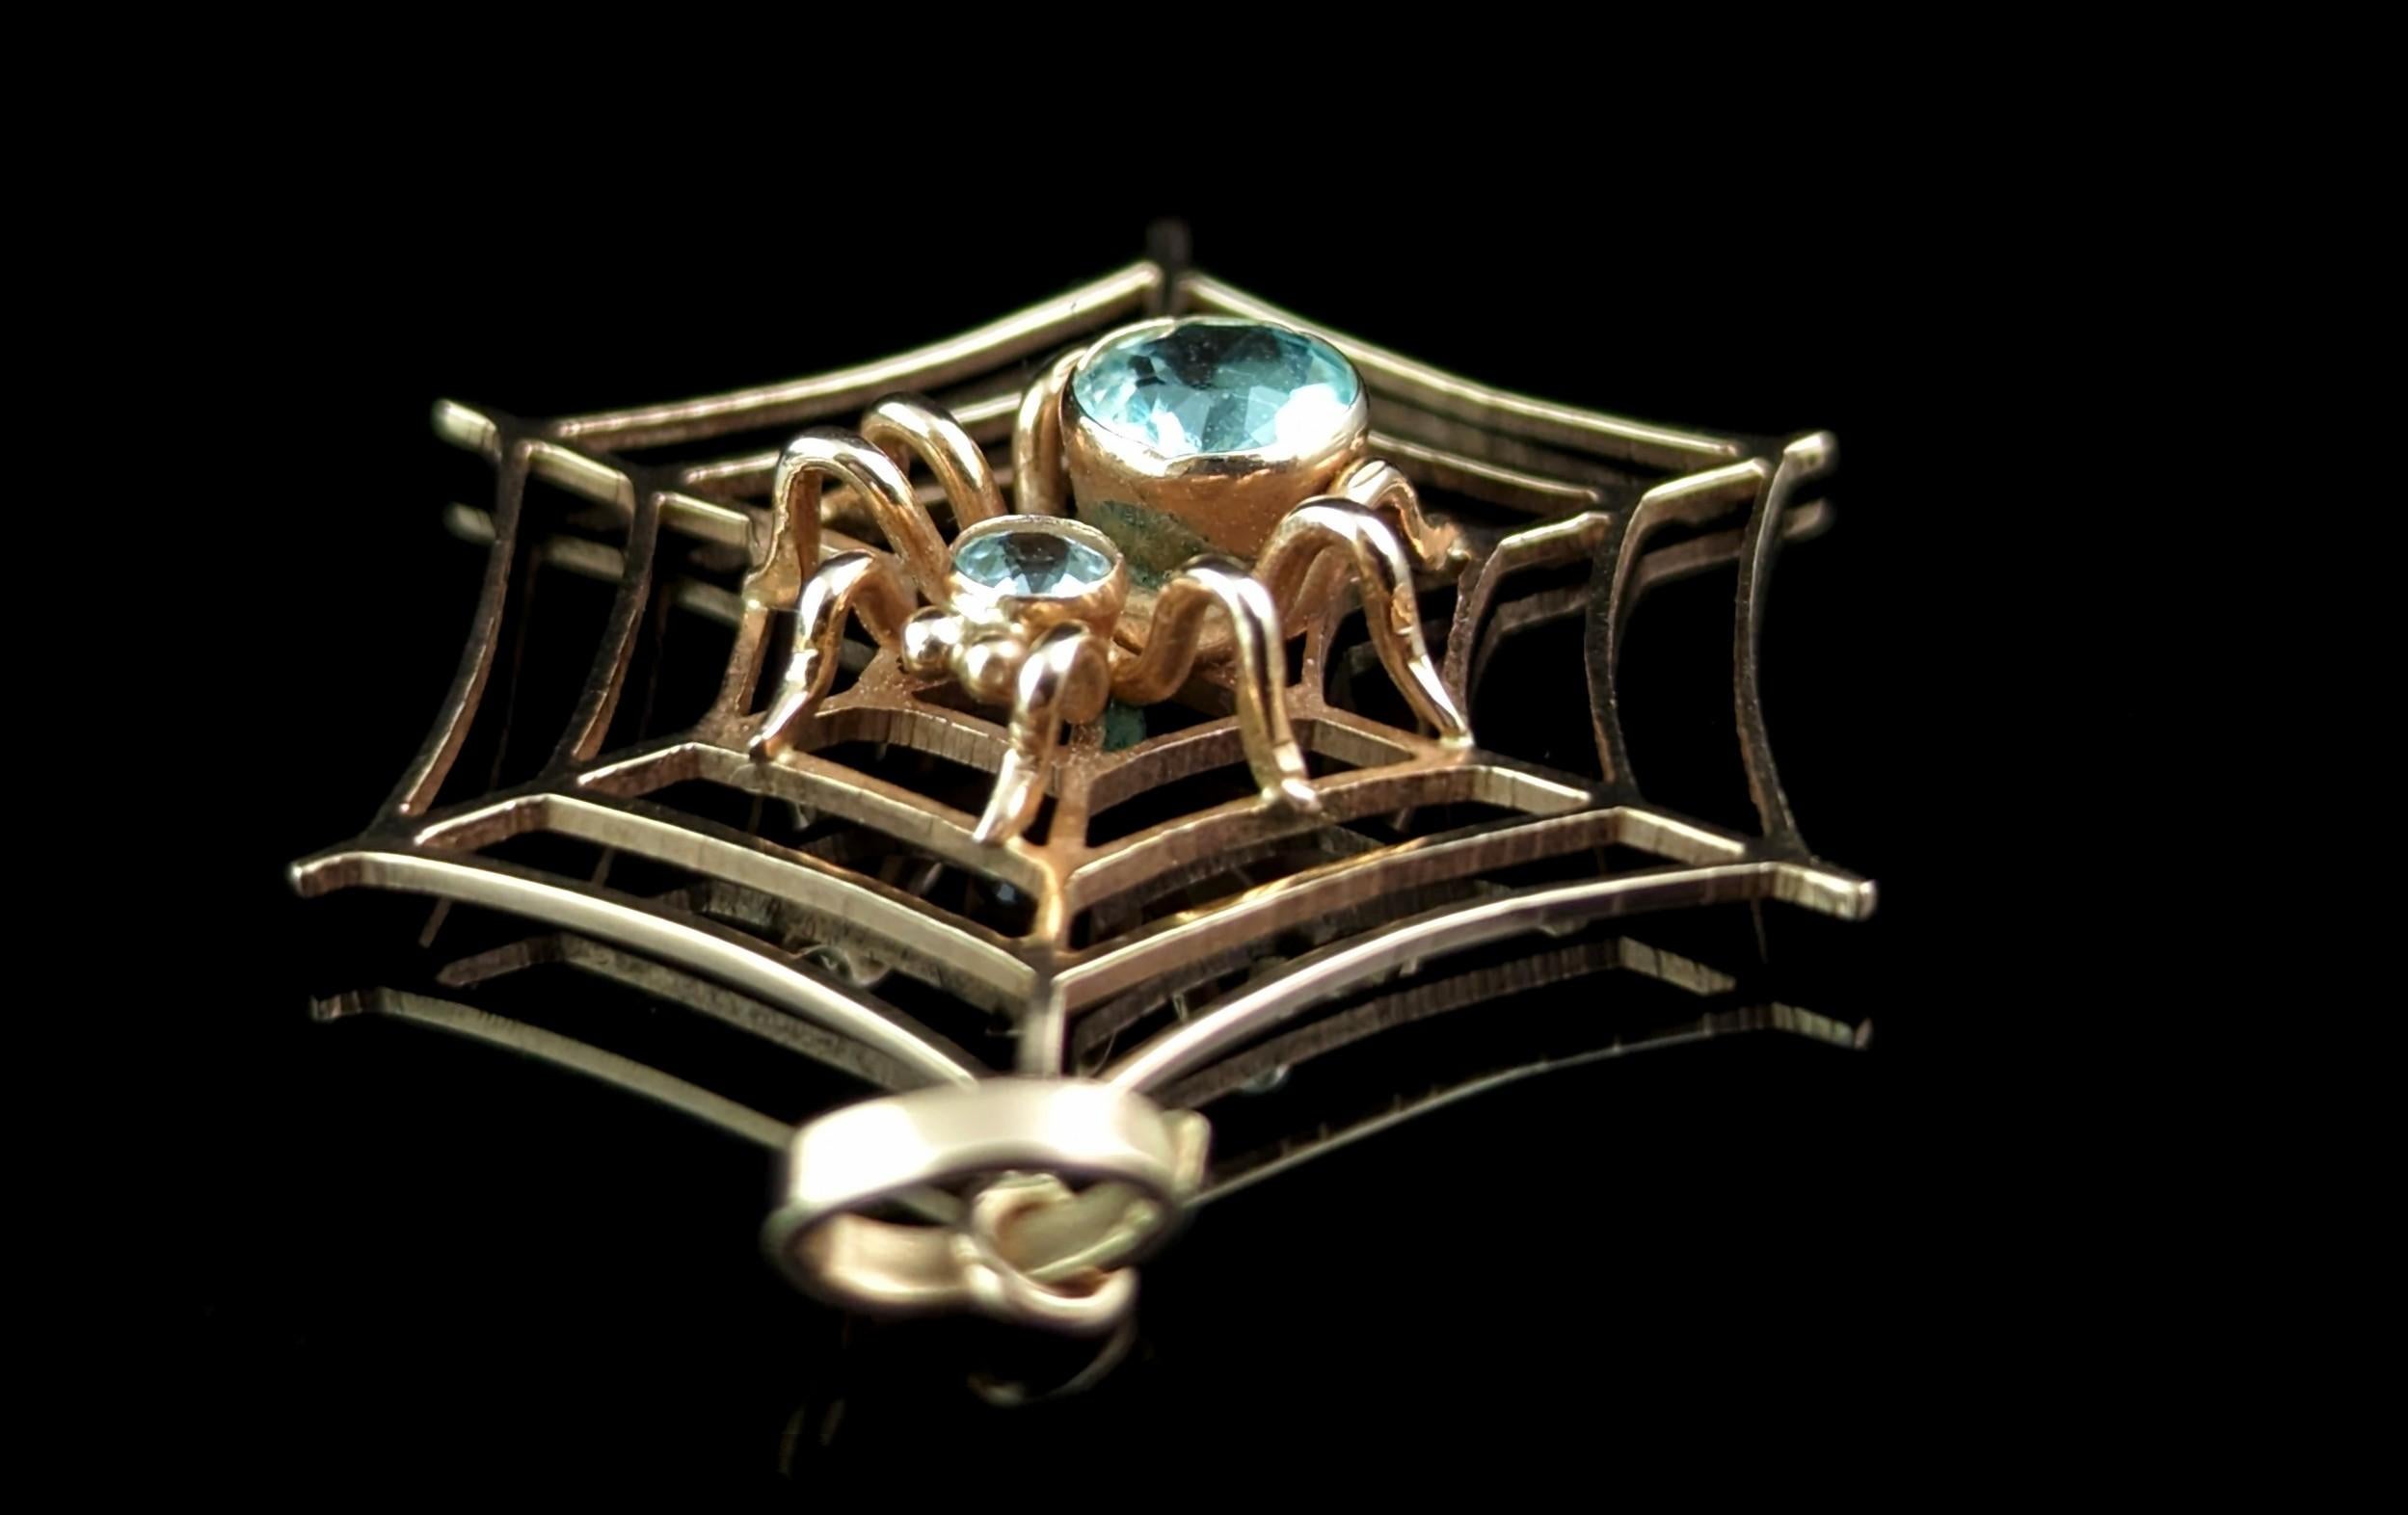 Antique Spider and Web pendant, Aquamarine, 9k rose gold  1